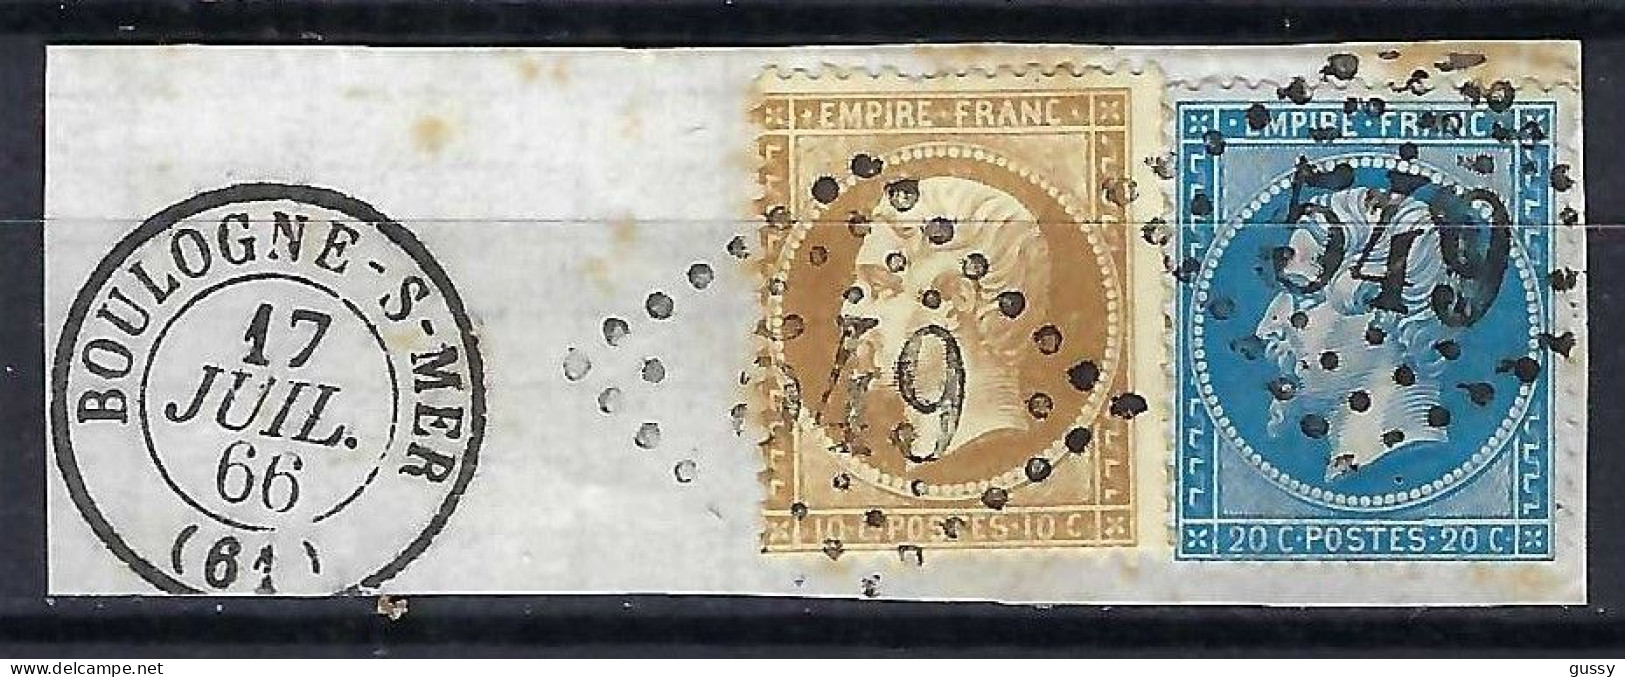 FRANCE Classique, B Obl. GC Des Villes Sur TP Isolés: GC 549 (Boulogne-s-Mer,1) Sur Y&T 21,22 Sur Fragment Avec CAD - 1862 Napoléon III.